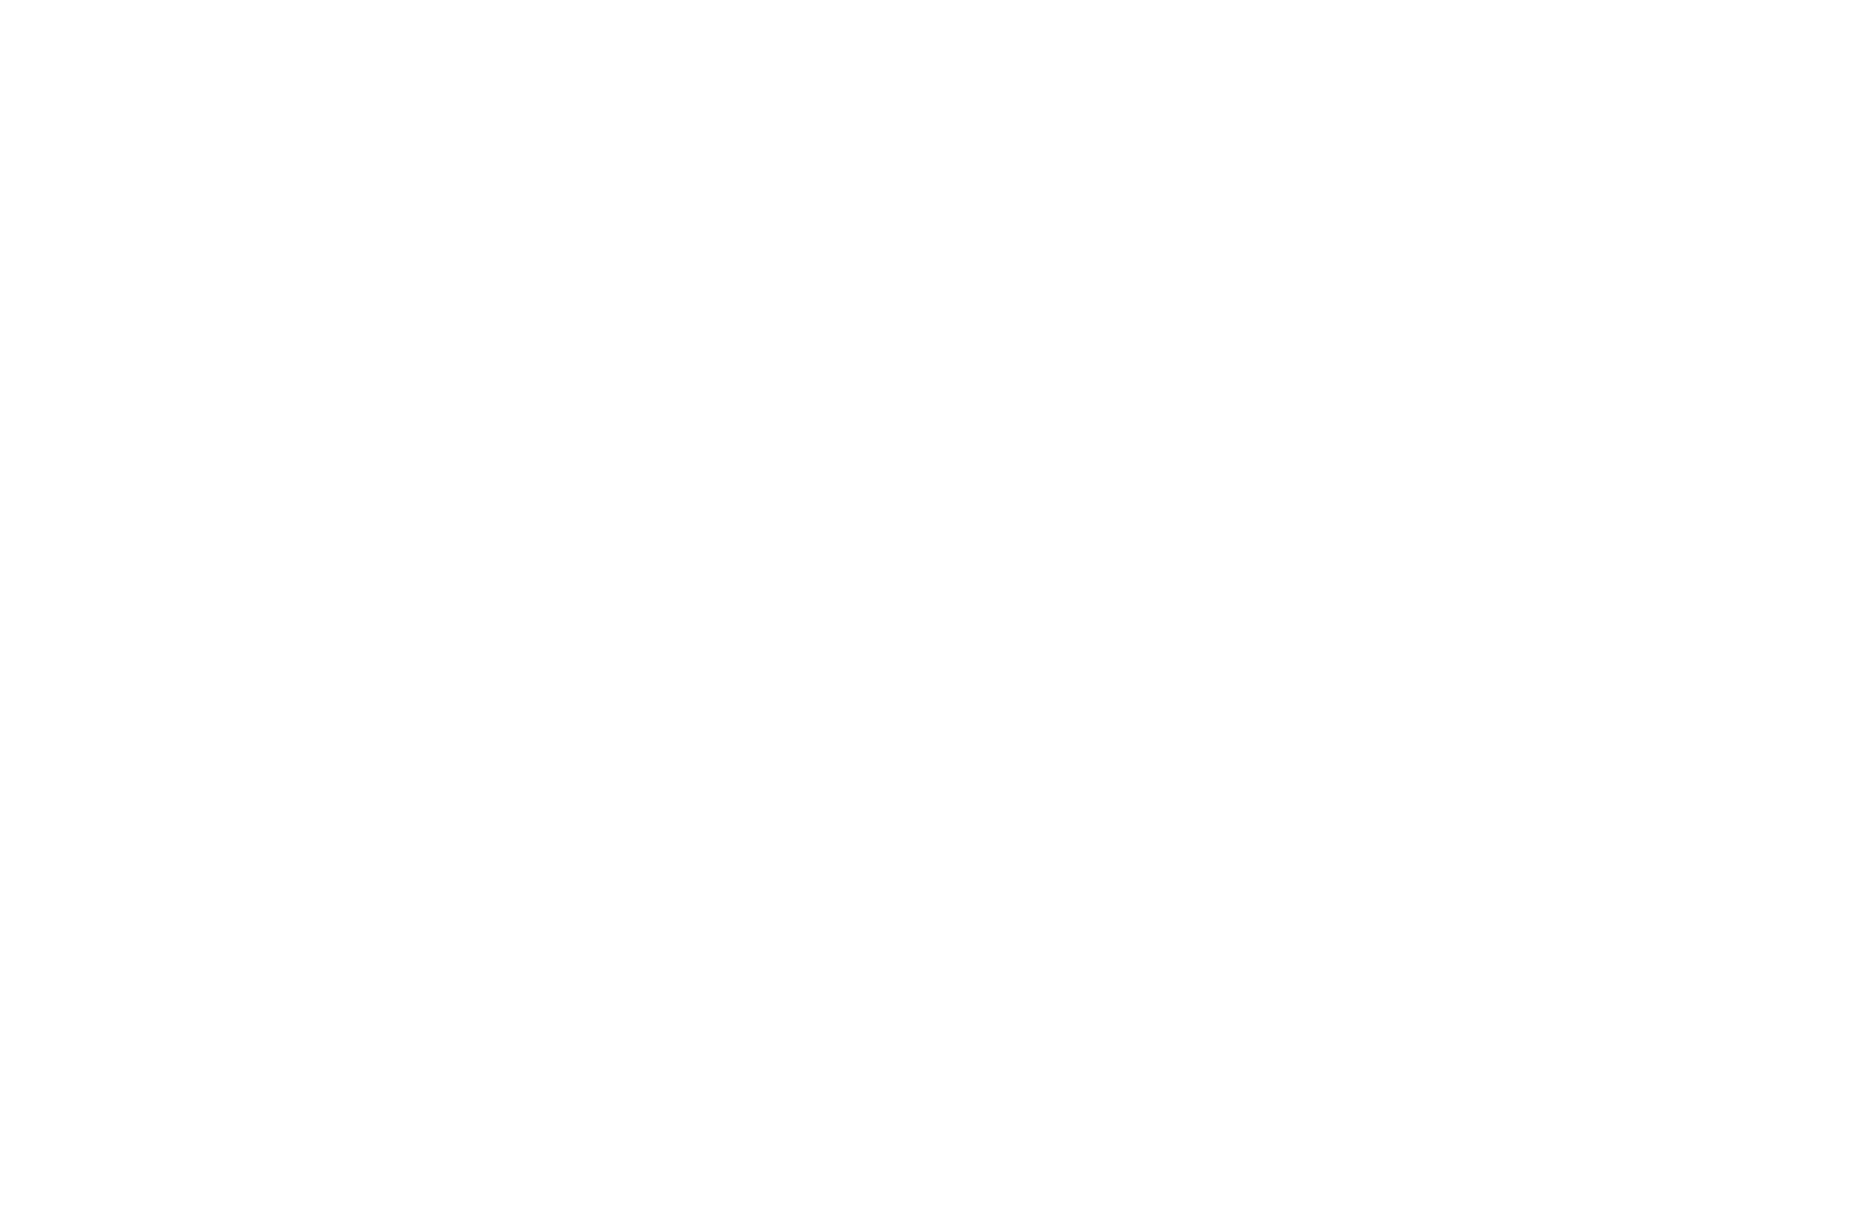 The Fan Fest Society